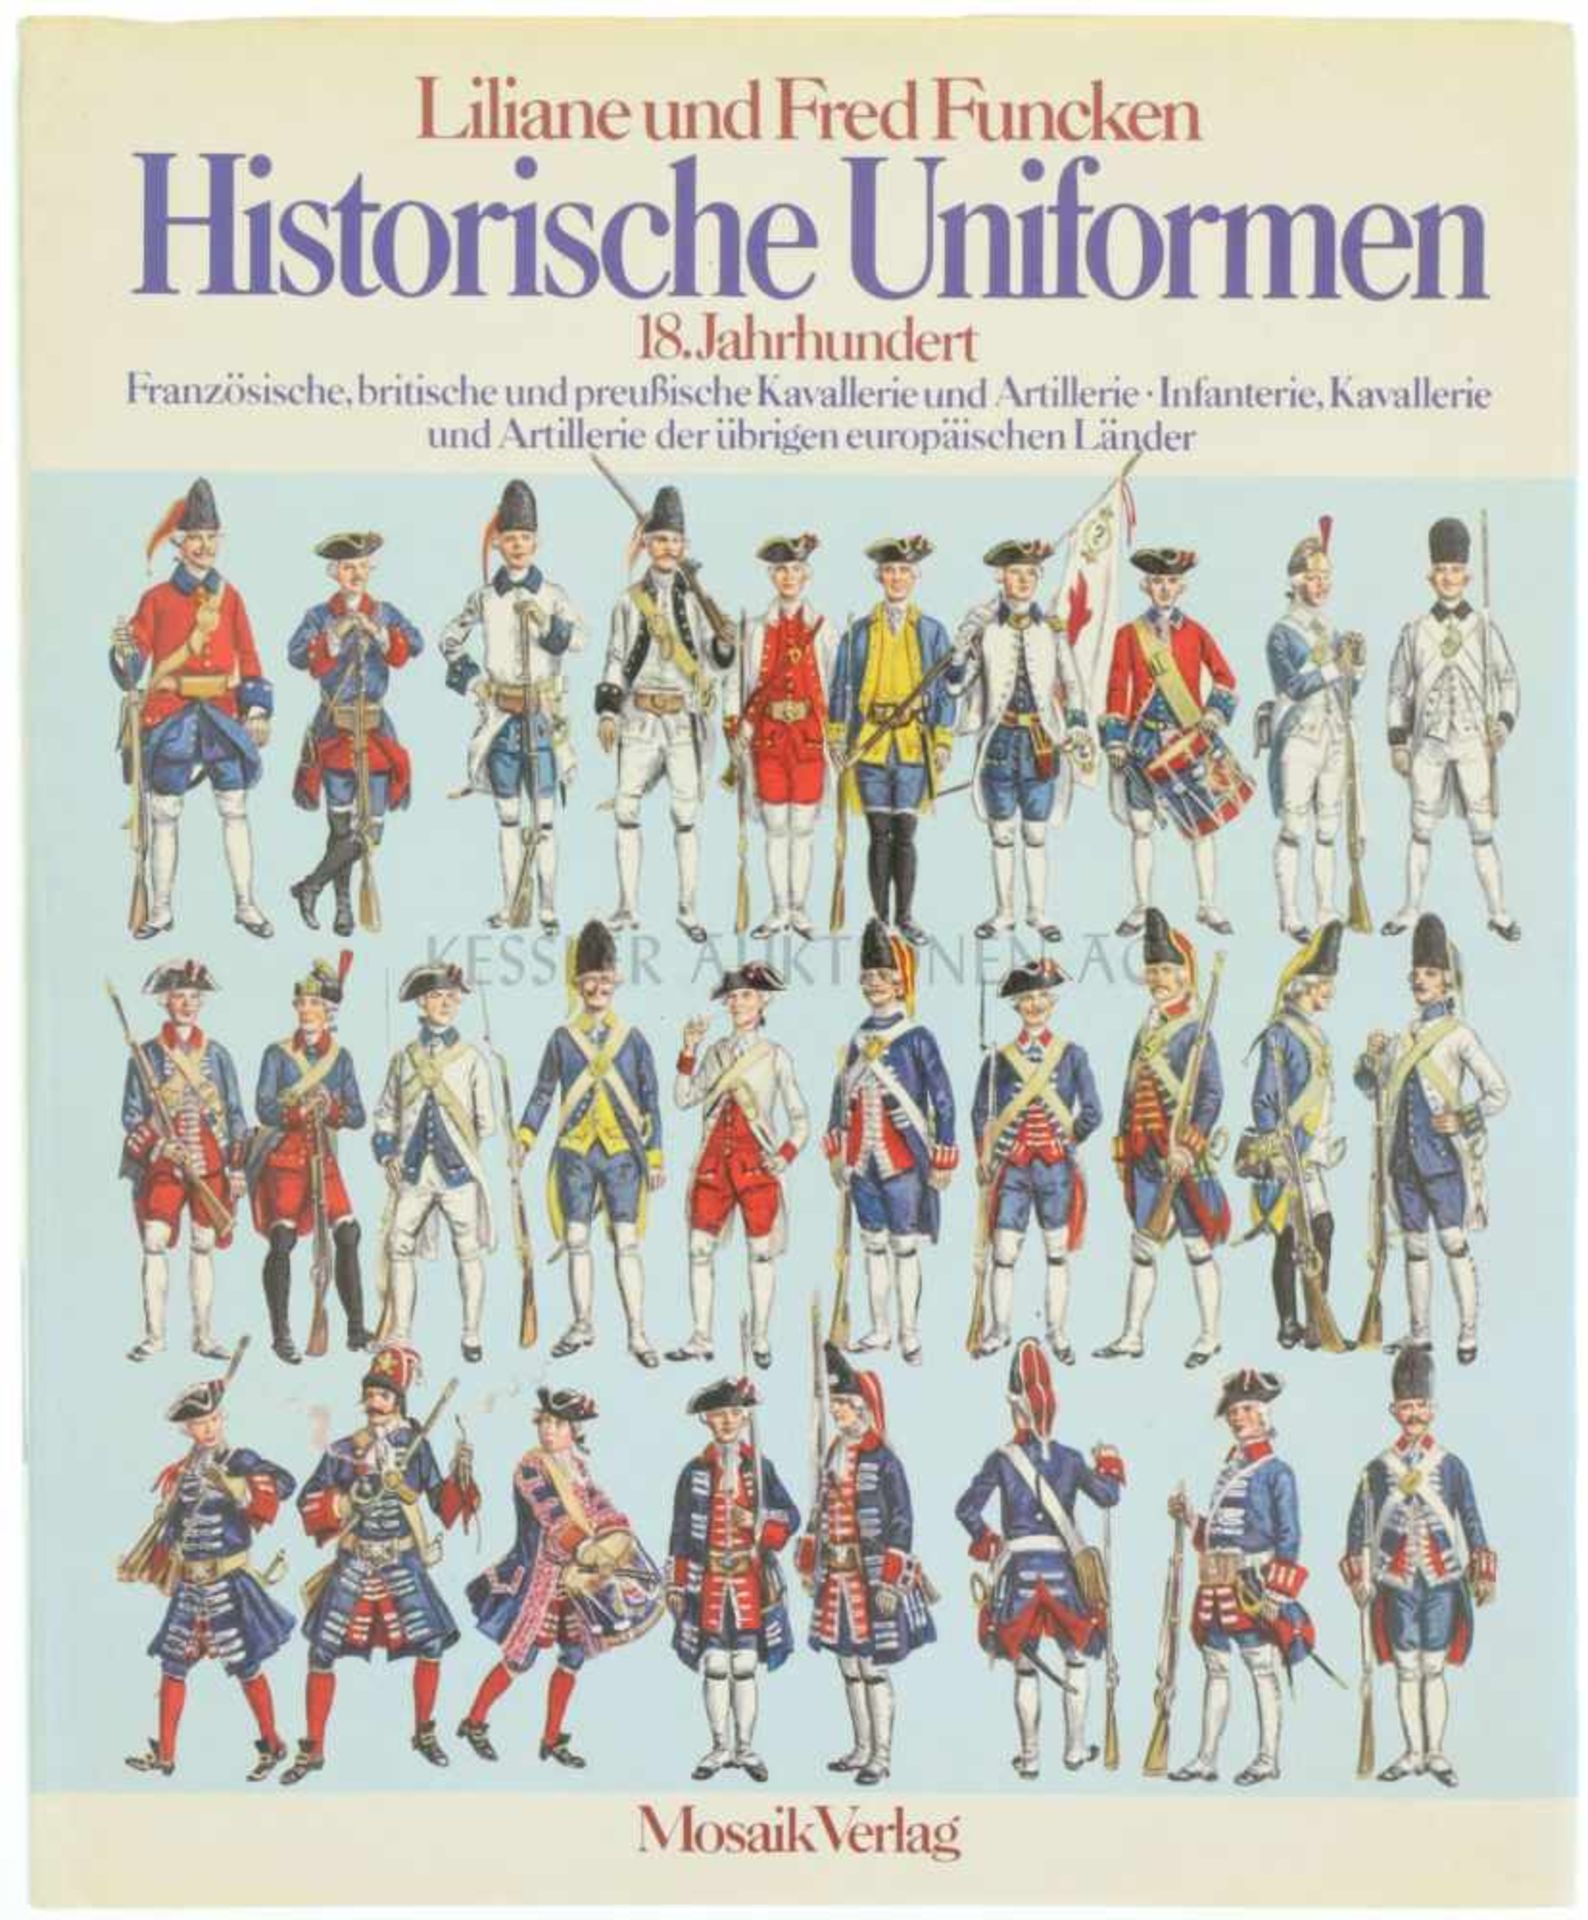 Historische Uniformen, 18. Jahrhundert Autoren Liliane und Fred Funcken, Mosaik Verlag, 1976, 156